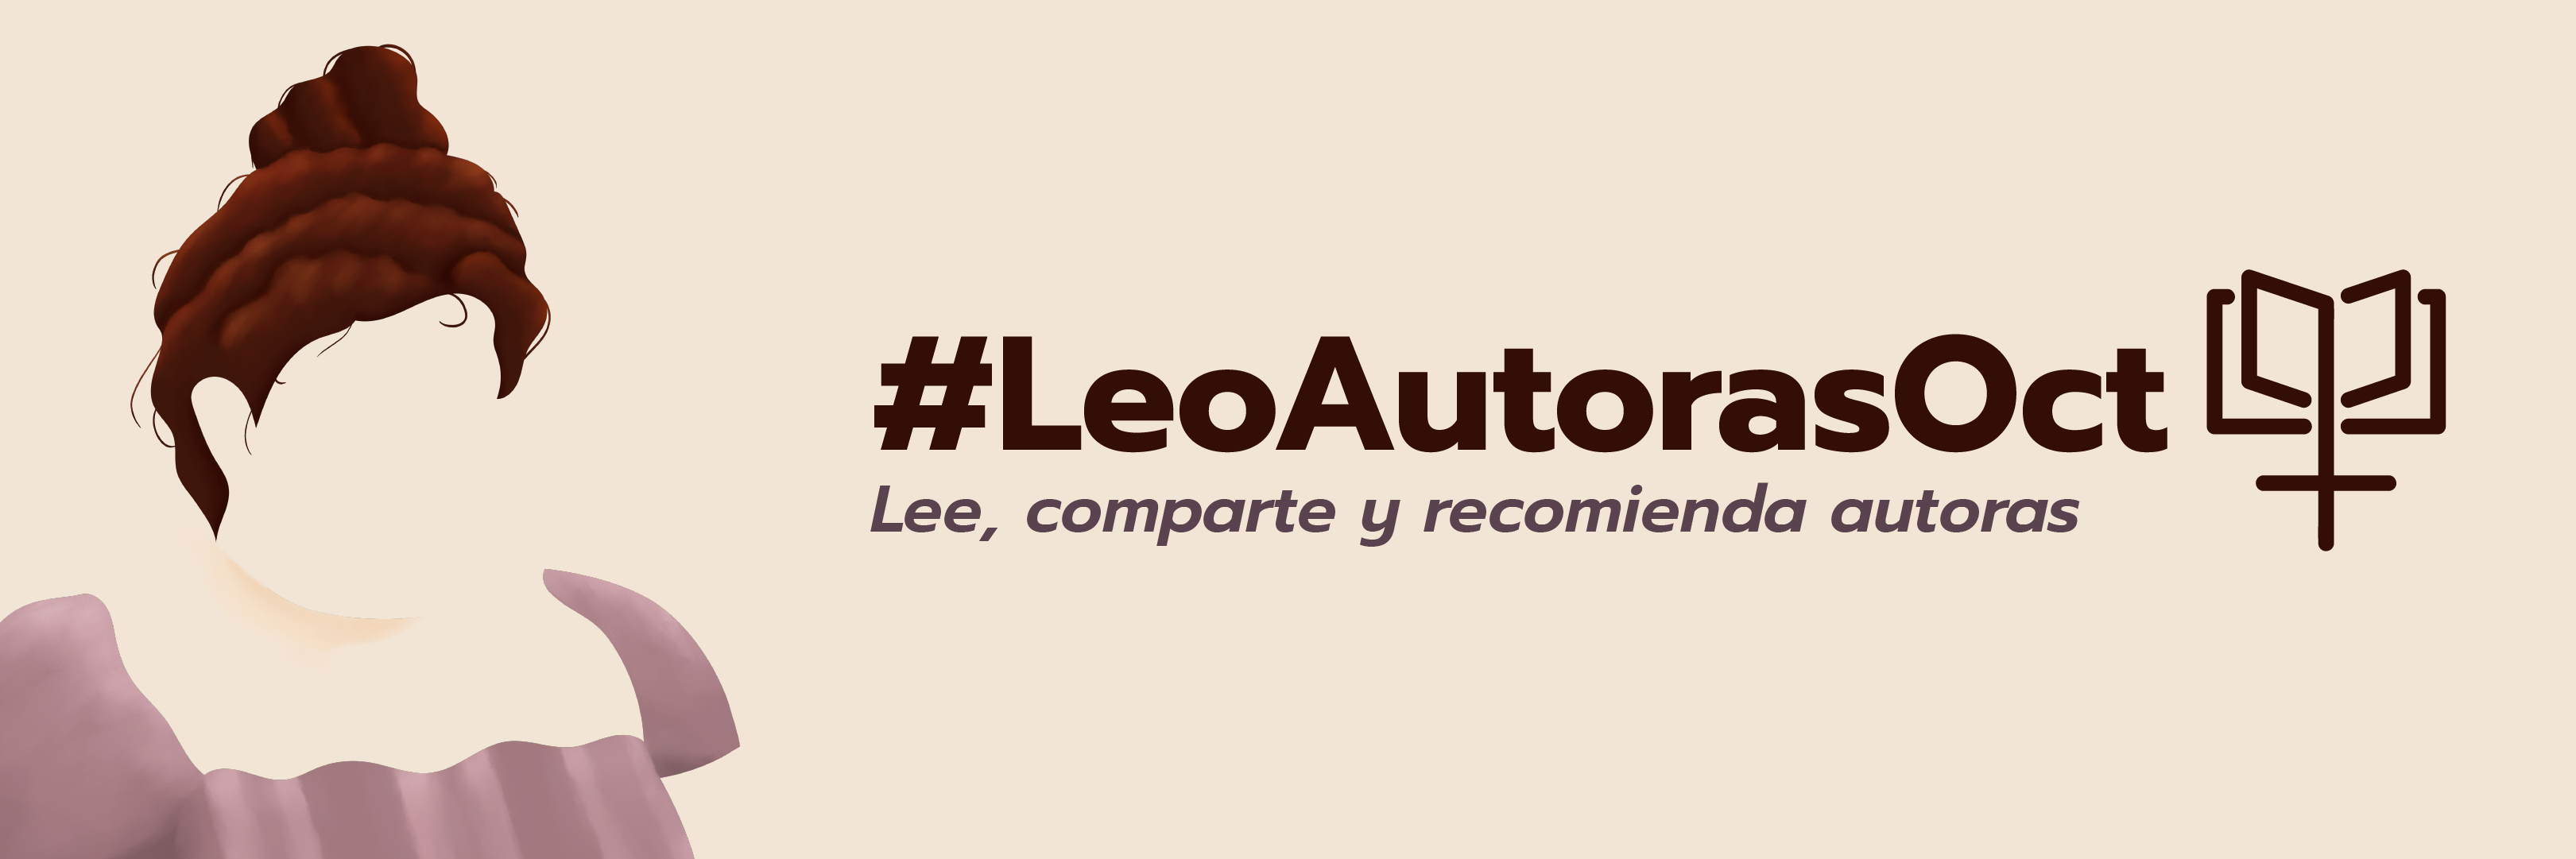 leoautoras2021-banner